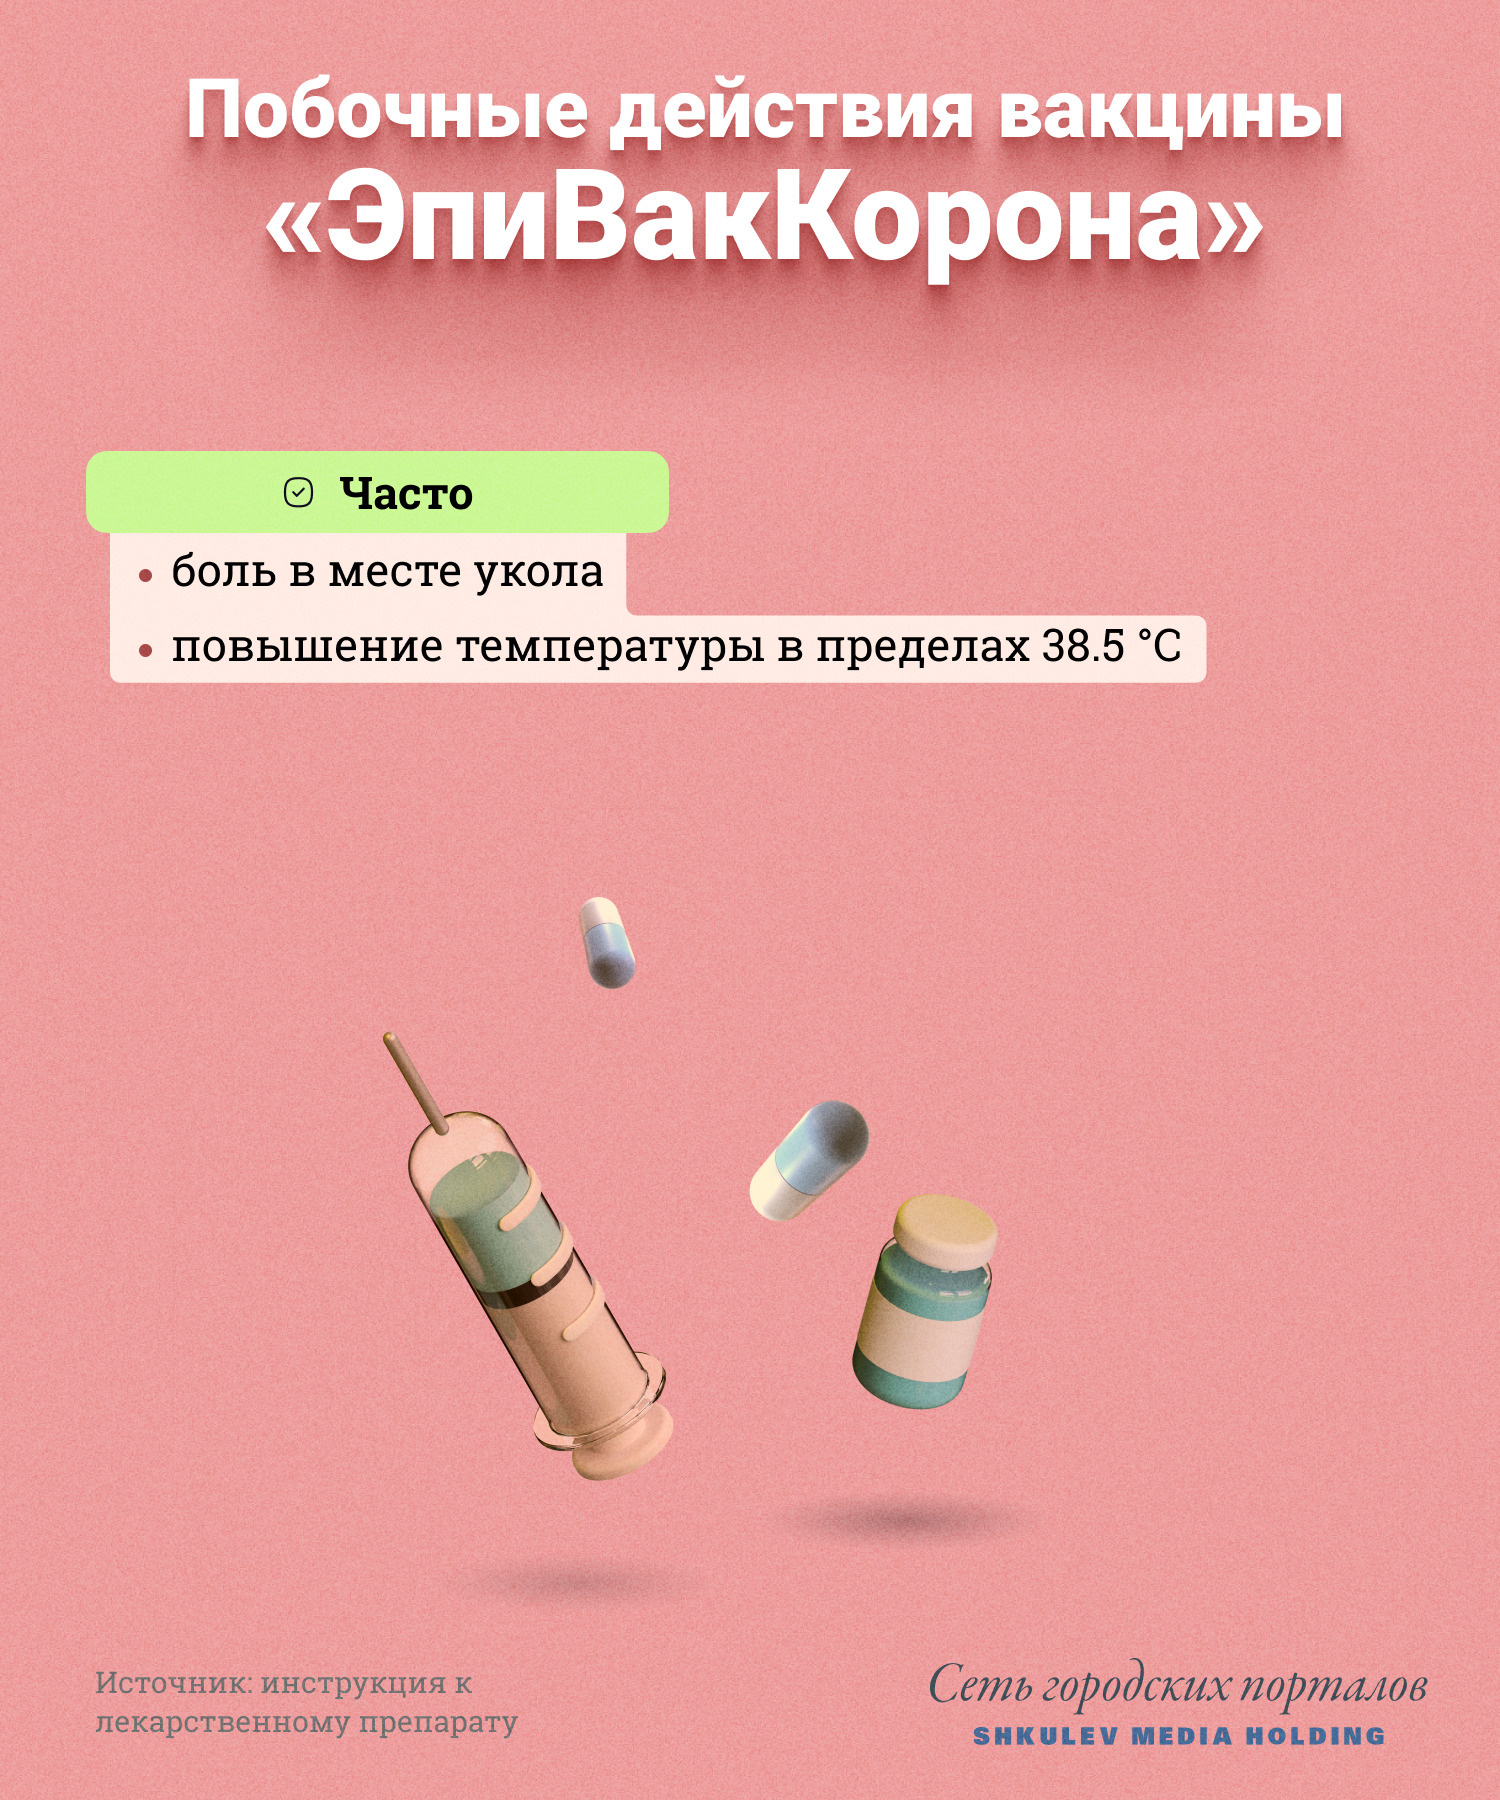 У «ЭпиВакКороны» побочек меньше, чем у любой из других российских вакцин